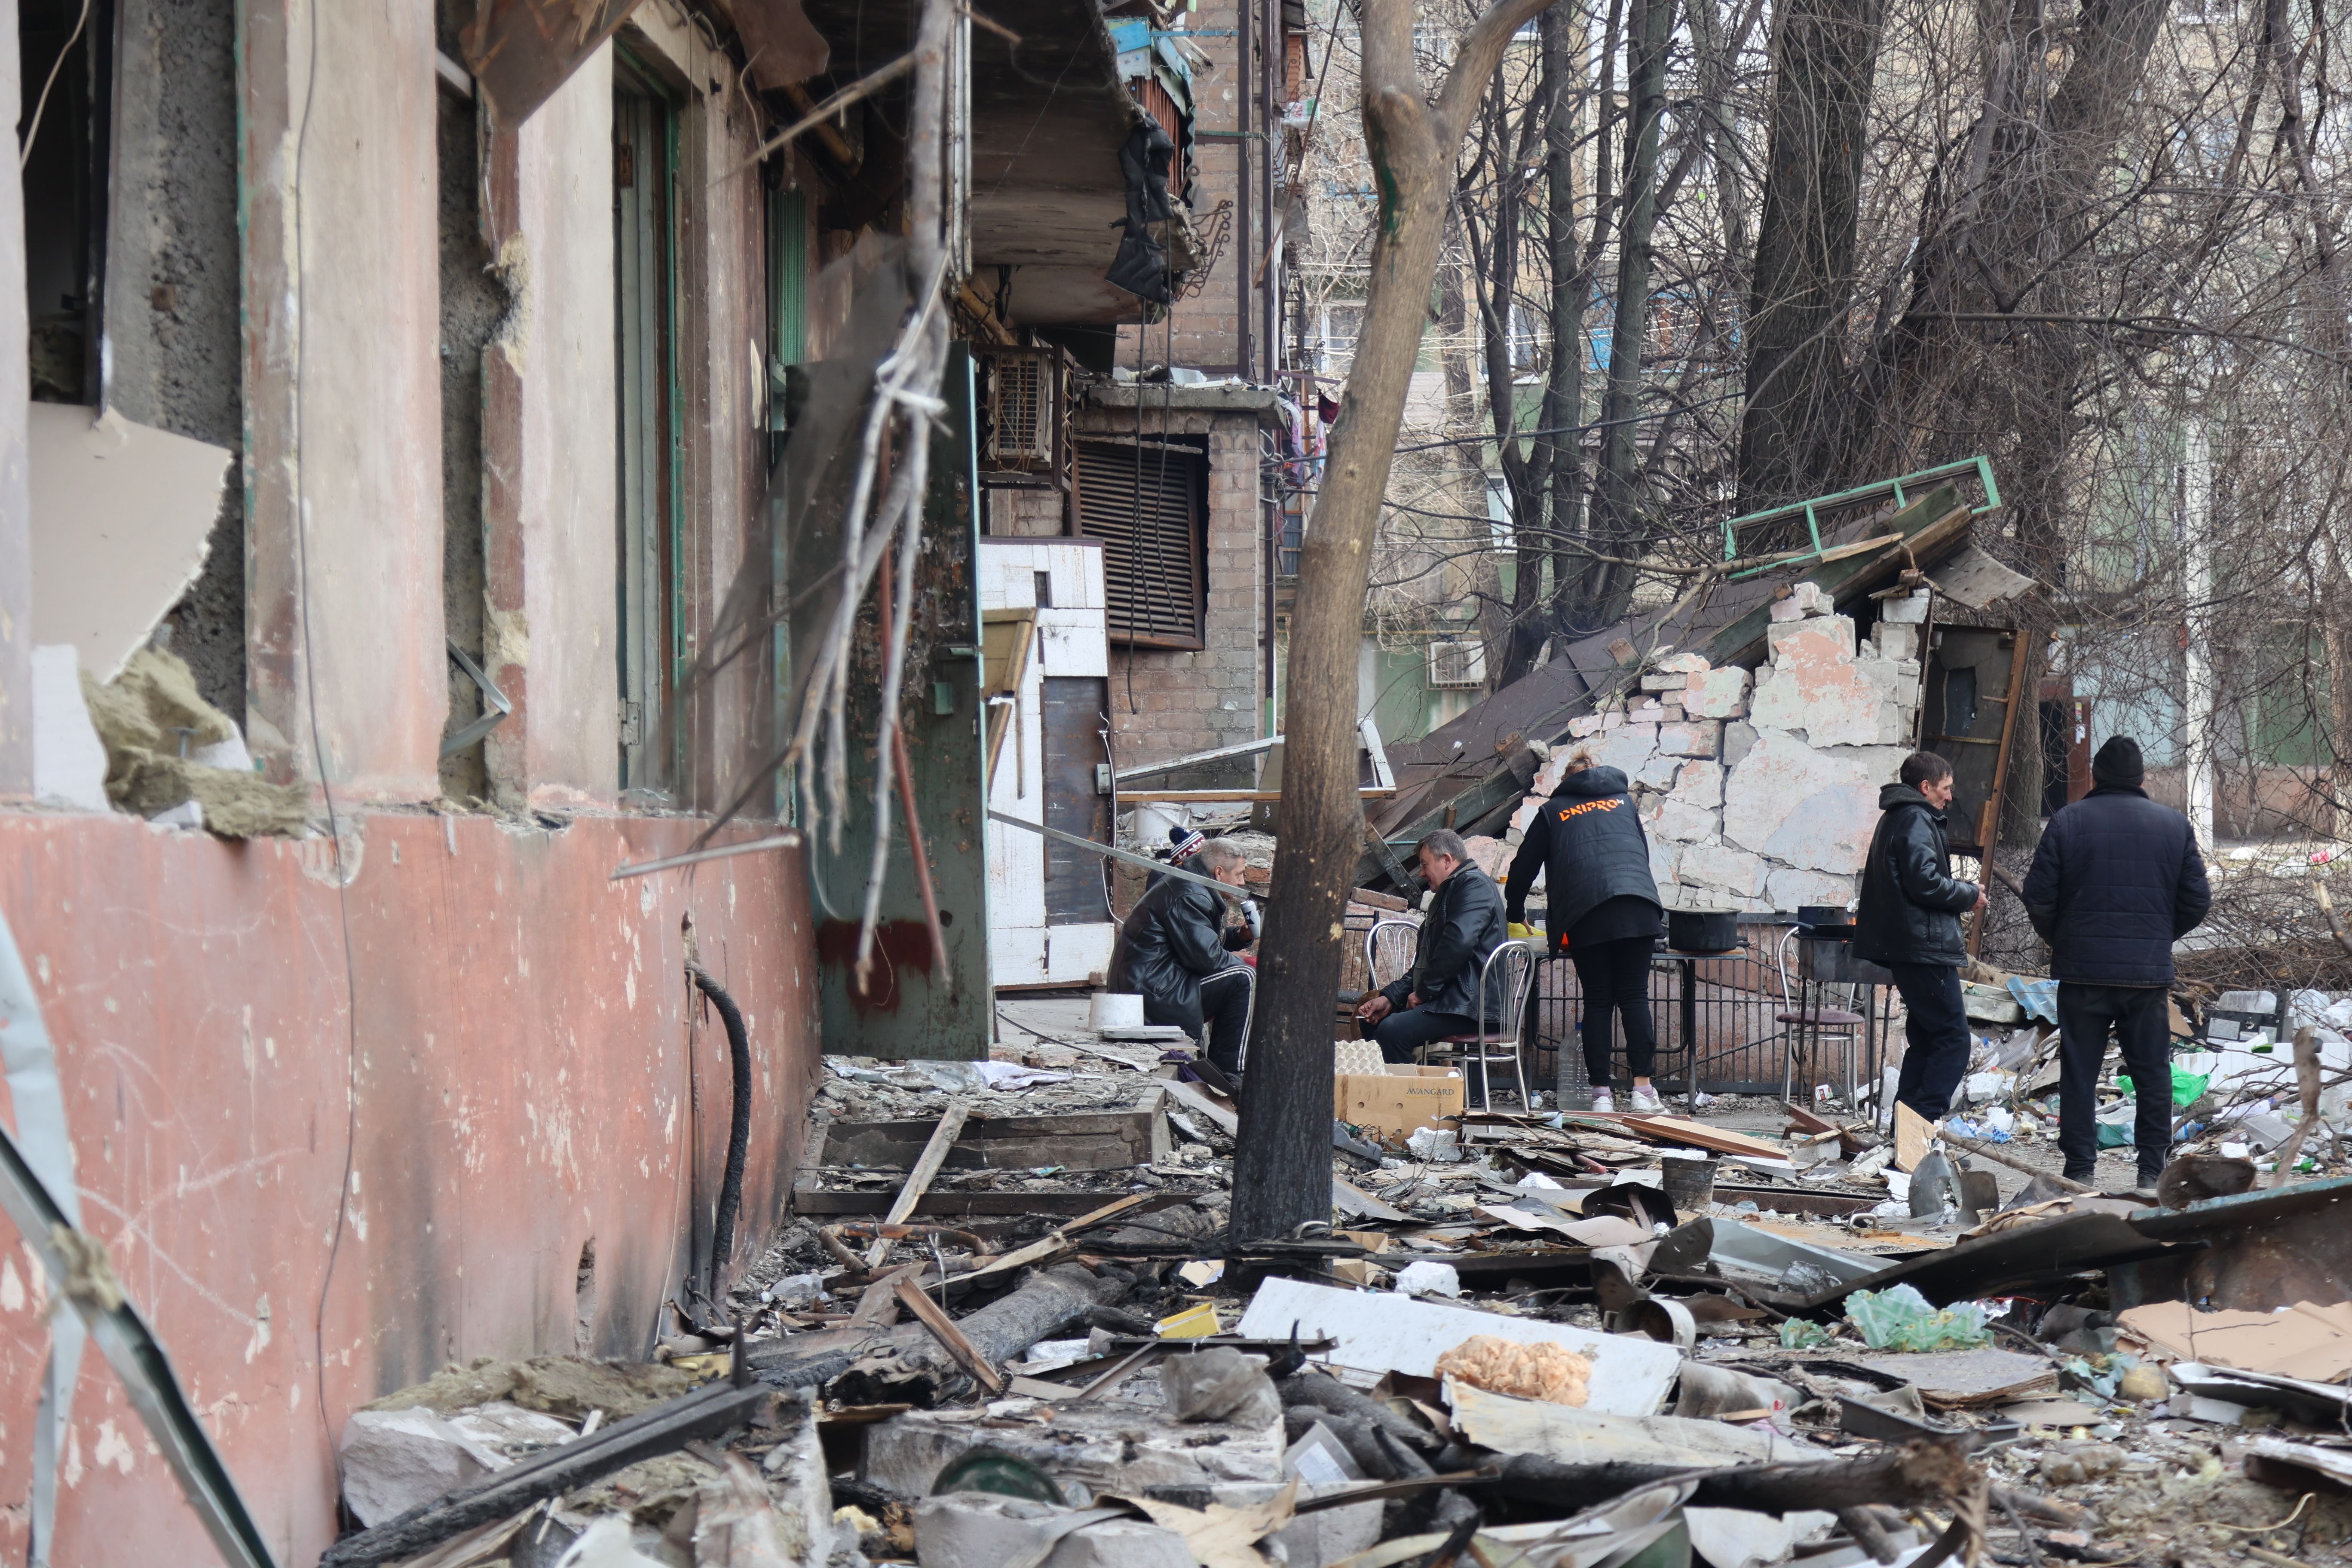   منظر للمباني والمركبات المتضررة بعد قصف مدينة ماريوبول الأوكرانية الخاضعة لسيطرة الجيش الروسي والانفصاليين الموالين لروسيا ، في 29 مارس.